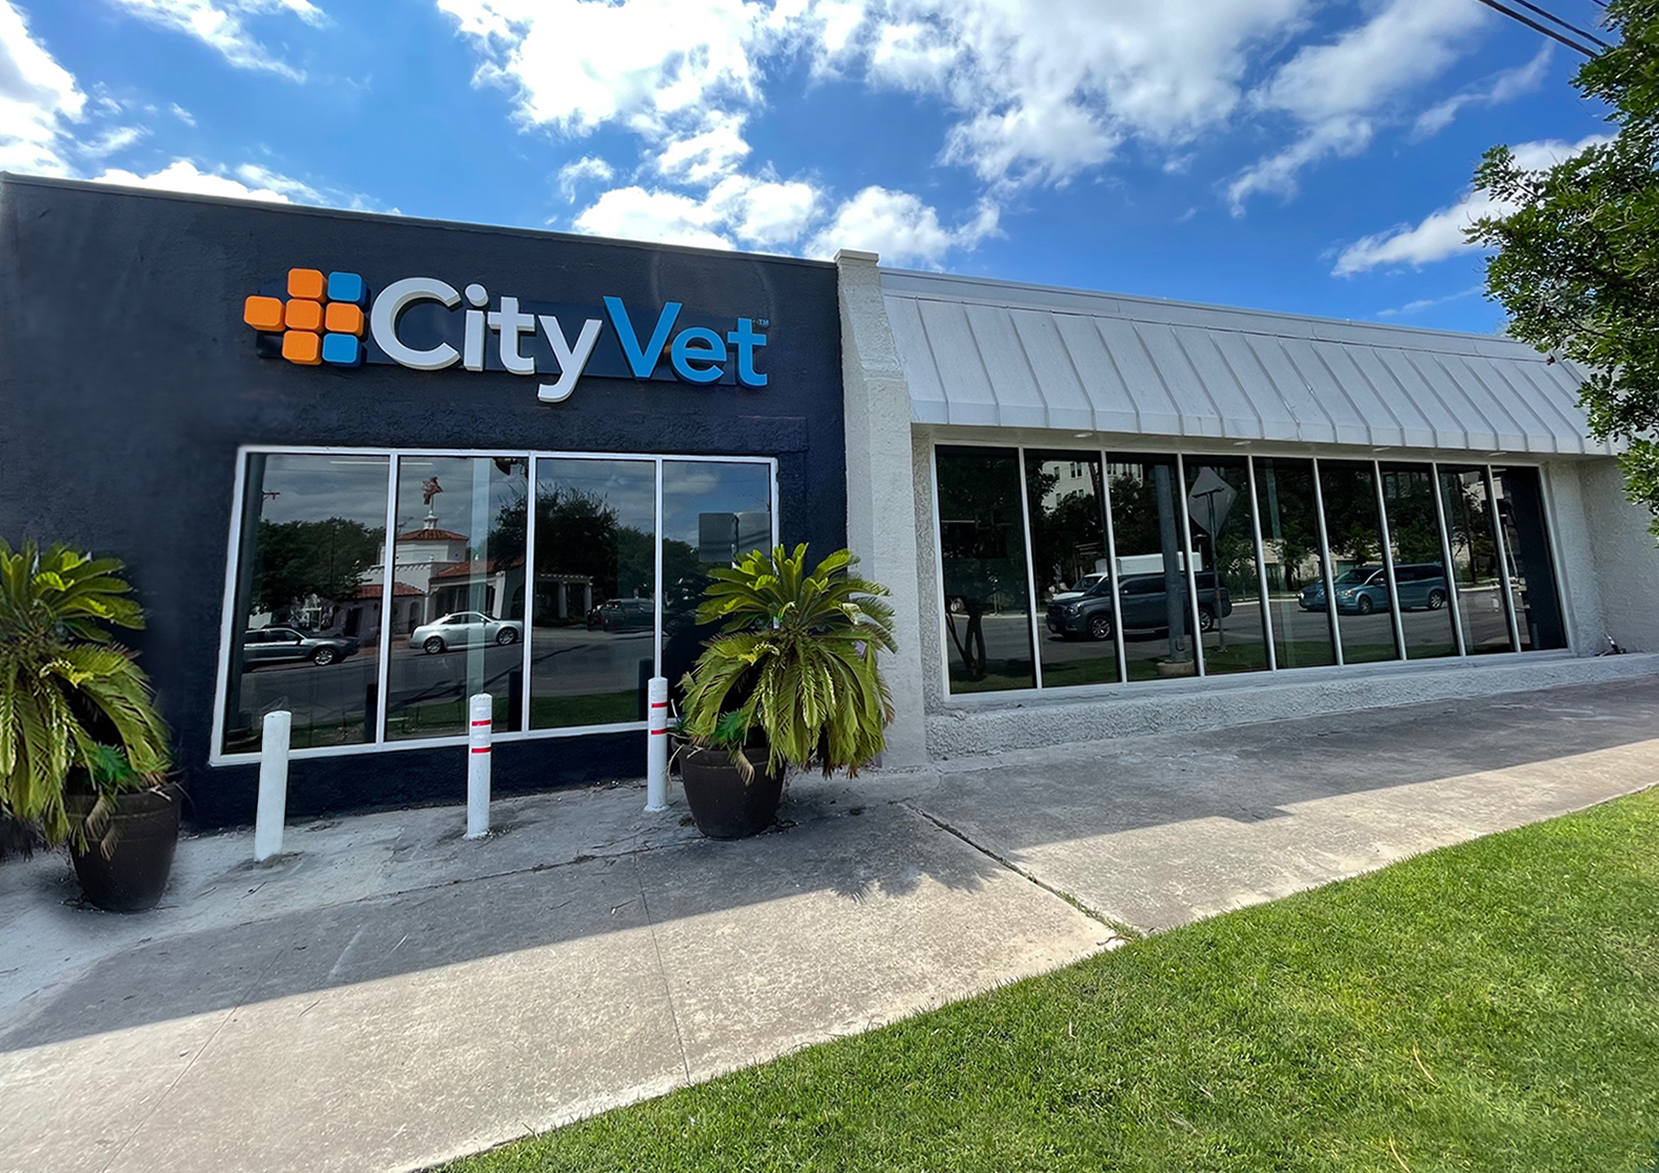 CityVet-Alamo Heights, First CityVet in San Antonio, Now Open - CityVet